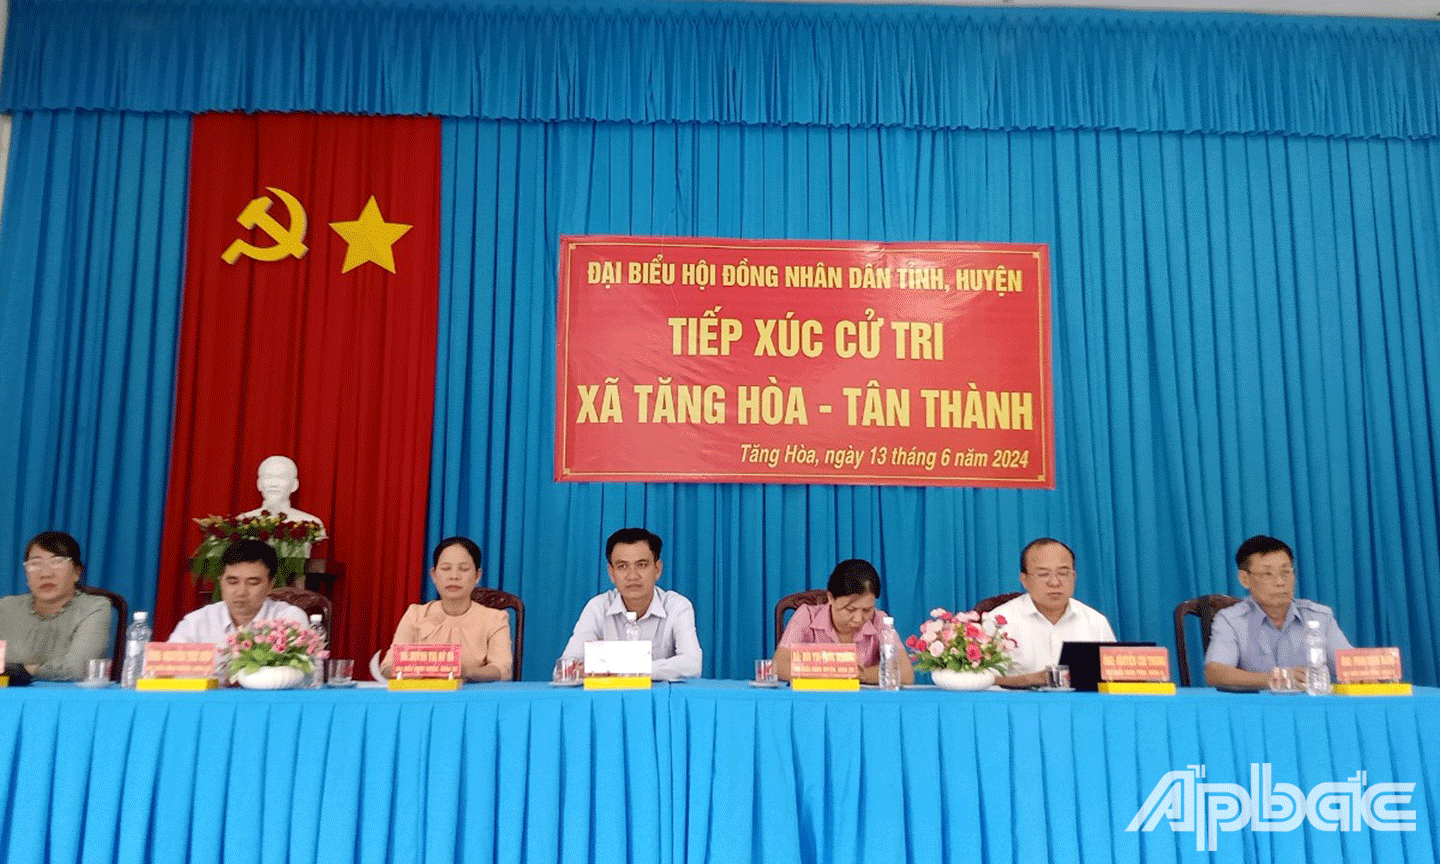 Đại biểu HĐND tỉnh Tiền Giang, huyện Gò Công Đông tiếp xúc cử tri 2 xã Tăng Hòa và Tân Thành